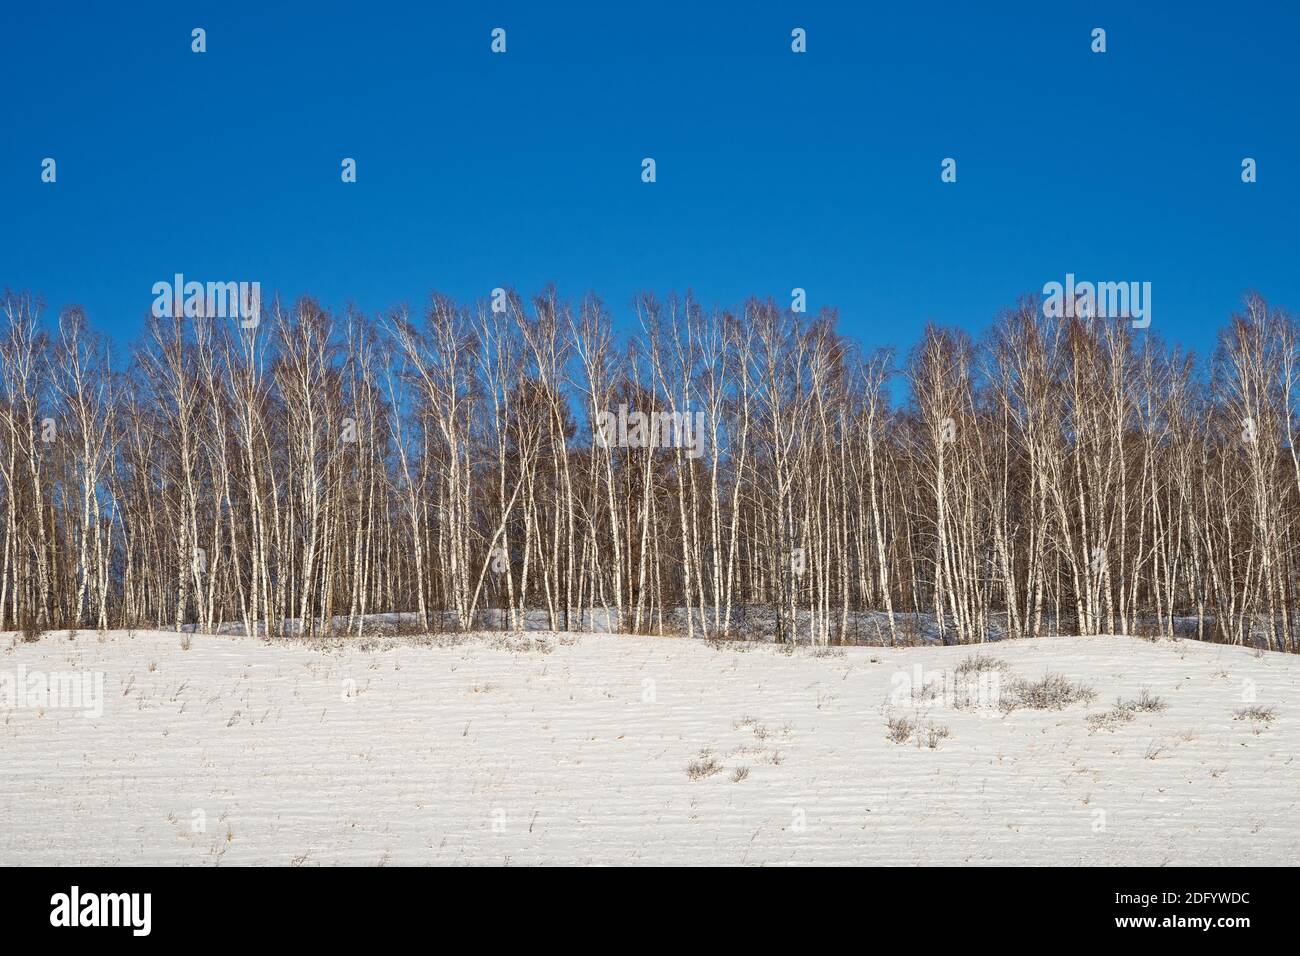 In una giornata invernale, gli uccelli bianchi si trovano in fila su un'alta collina innevata contro un cielo blu. Foto Stock